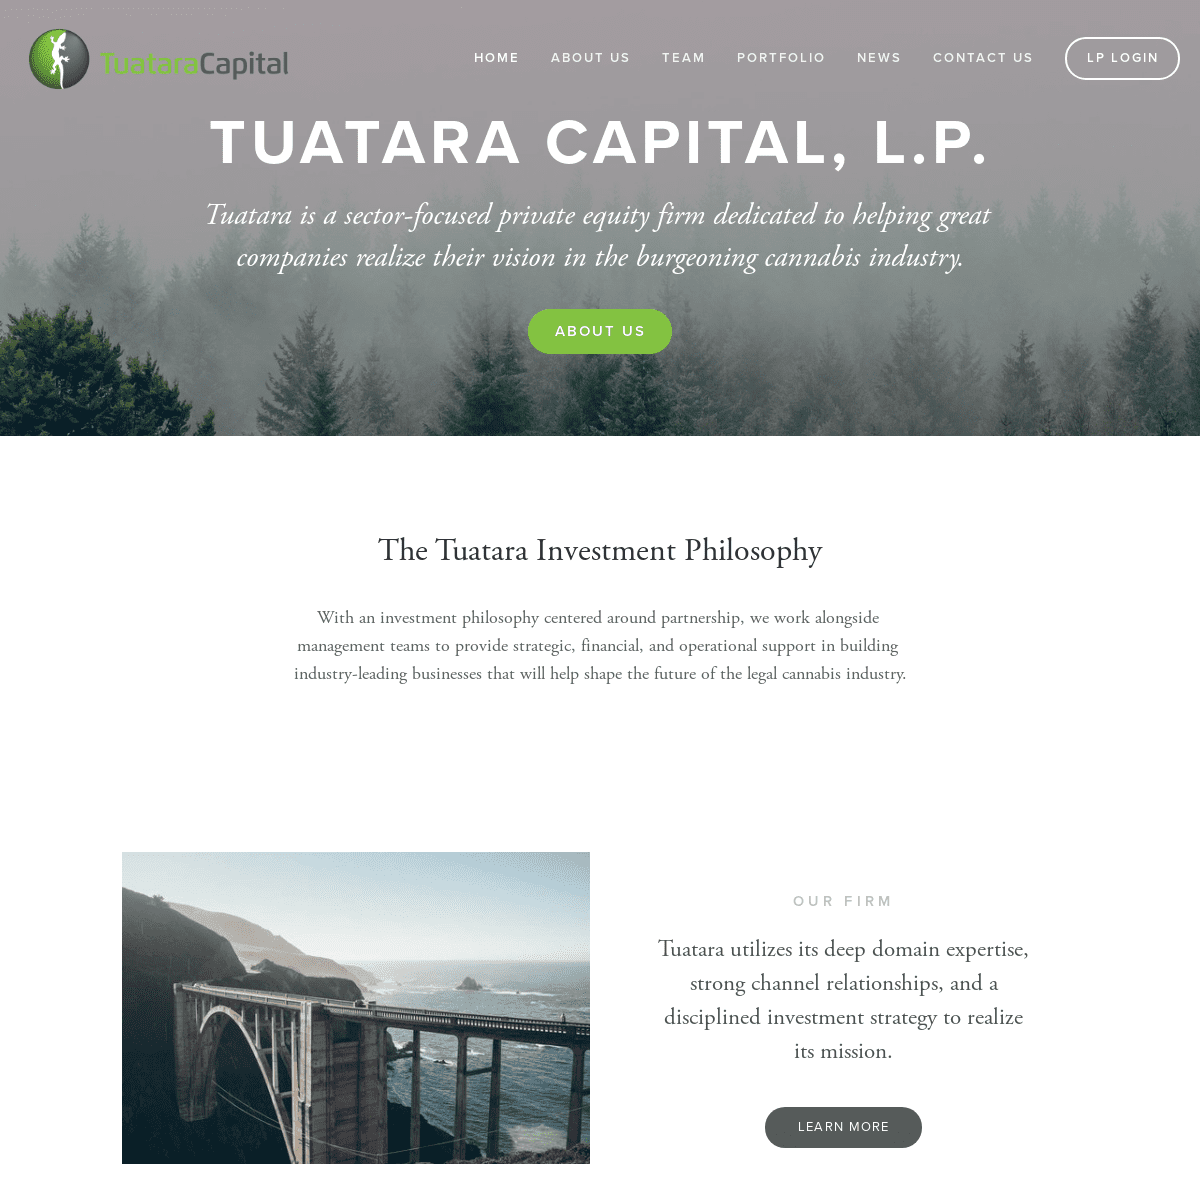 Tuatara Capital, L.P.